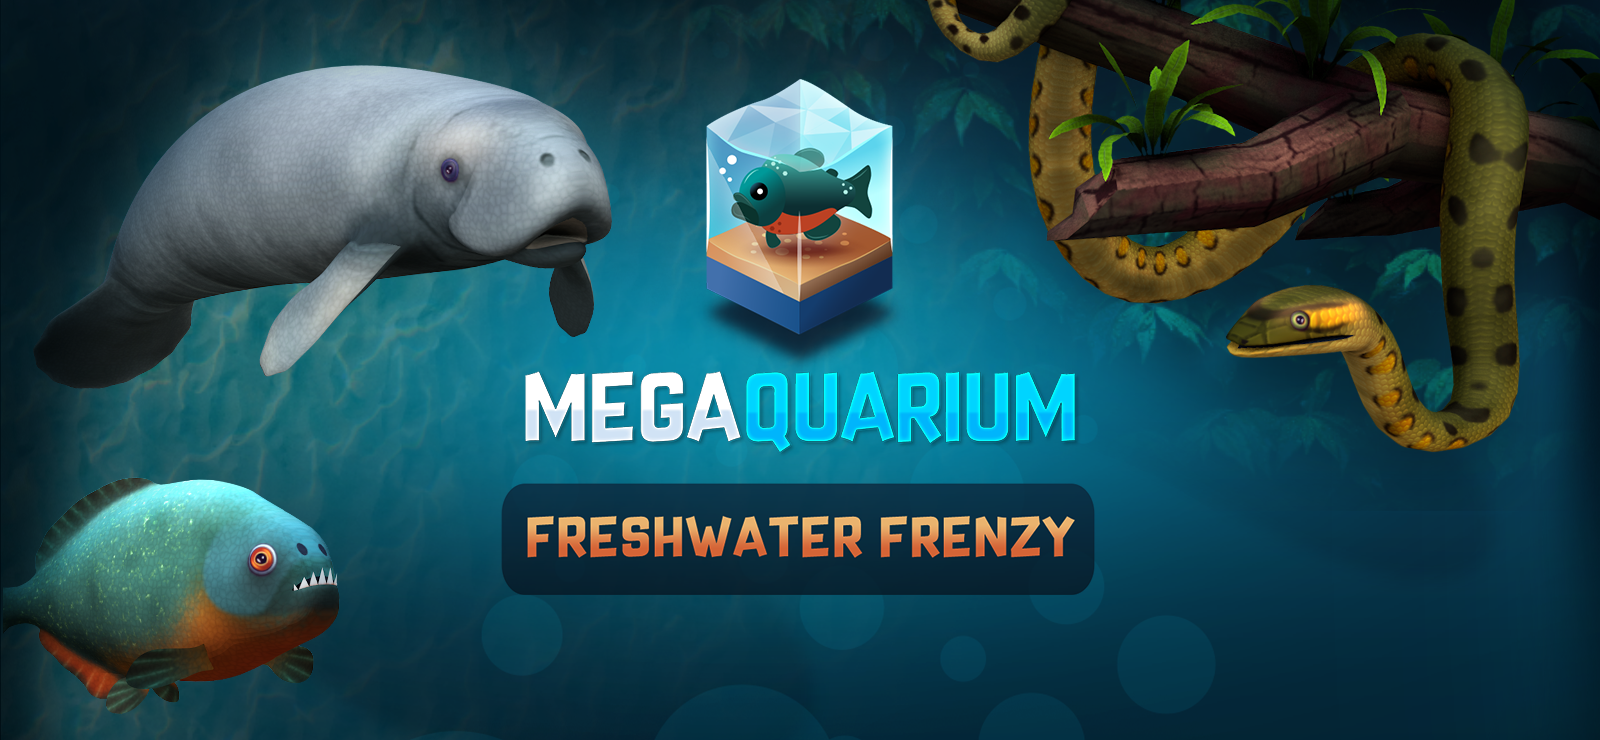 Megaquarium: Freshwater Frenzy - Deluxe Expansion